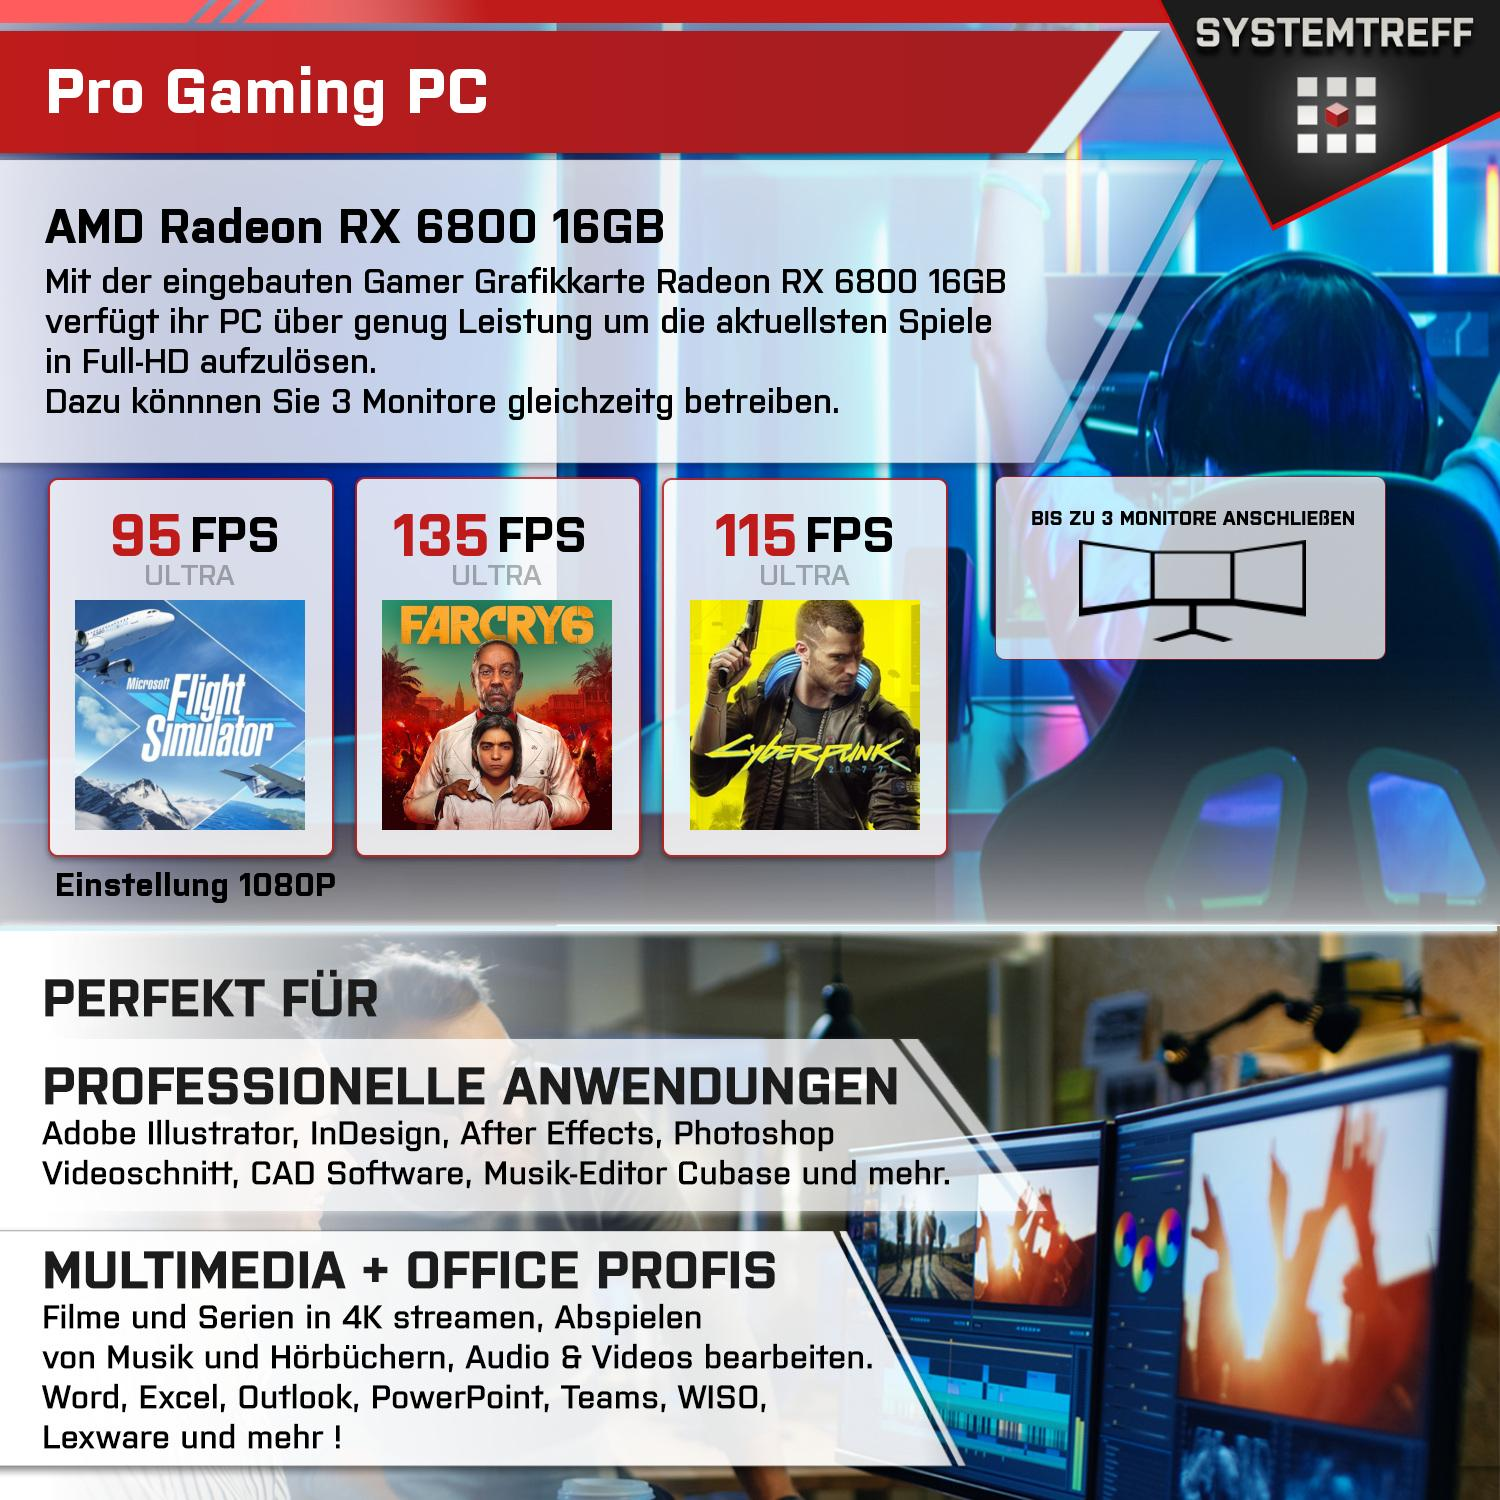 6800 Gaming GB GB Komplett 32 7800X3D RAM, PC Ryzen RX SYSTEMTREFF GB 16GB 7 mSSD, Komplett mit AMD Radeon 7800X3D, 1000 Prozessor, GDDR6, AMD 16